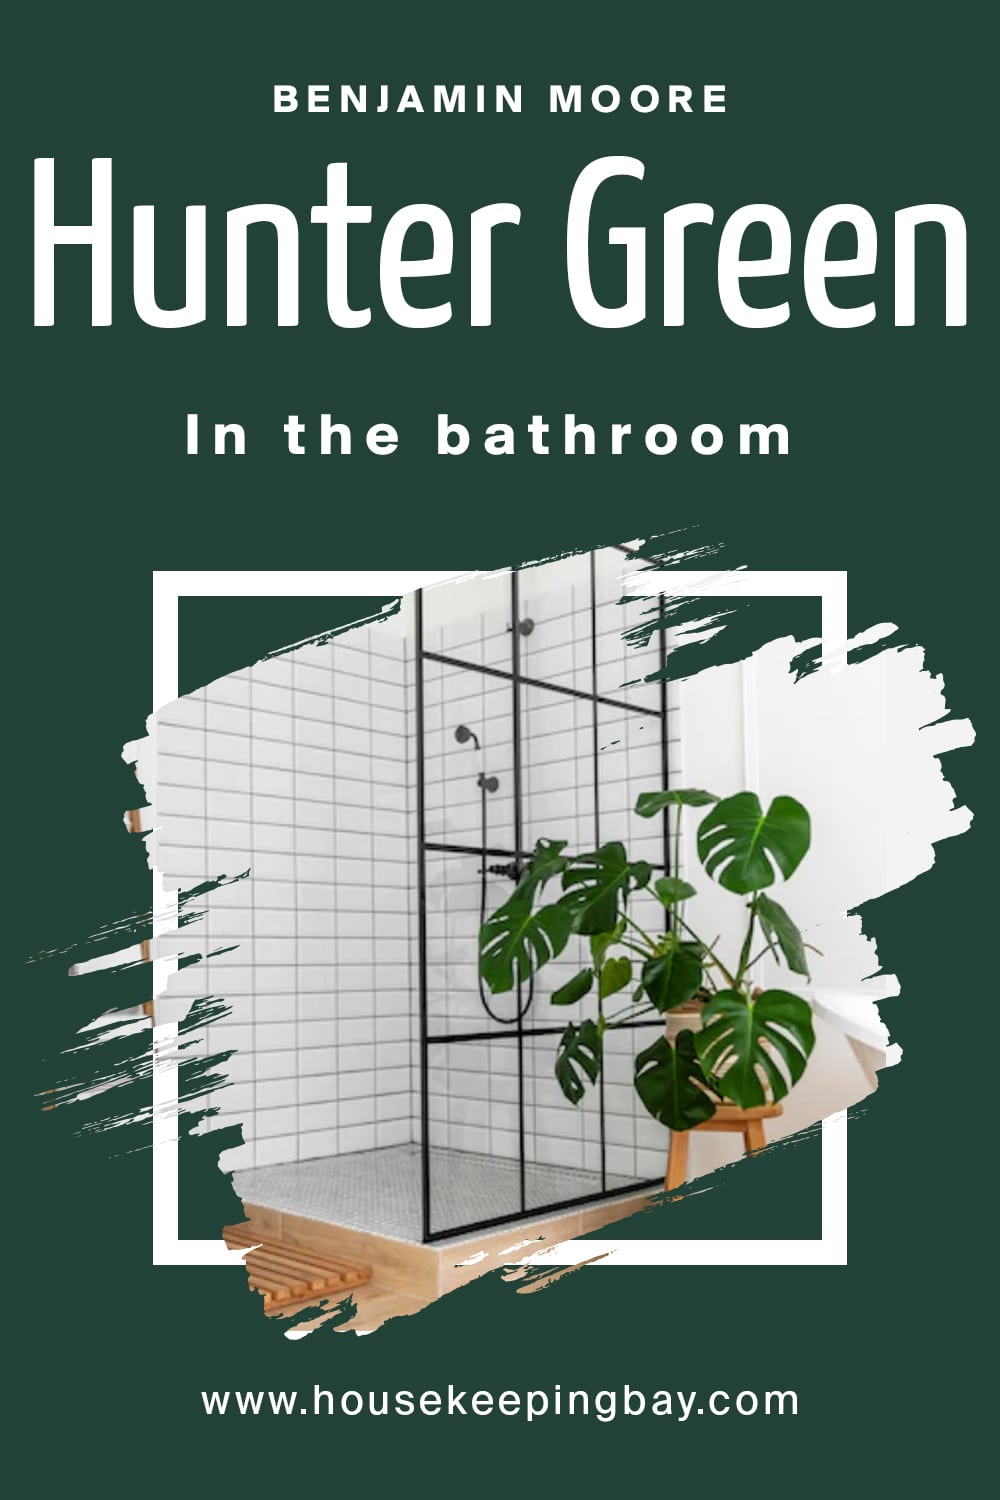 Benjamin Moore. Hunter Green In the bathroom